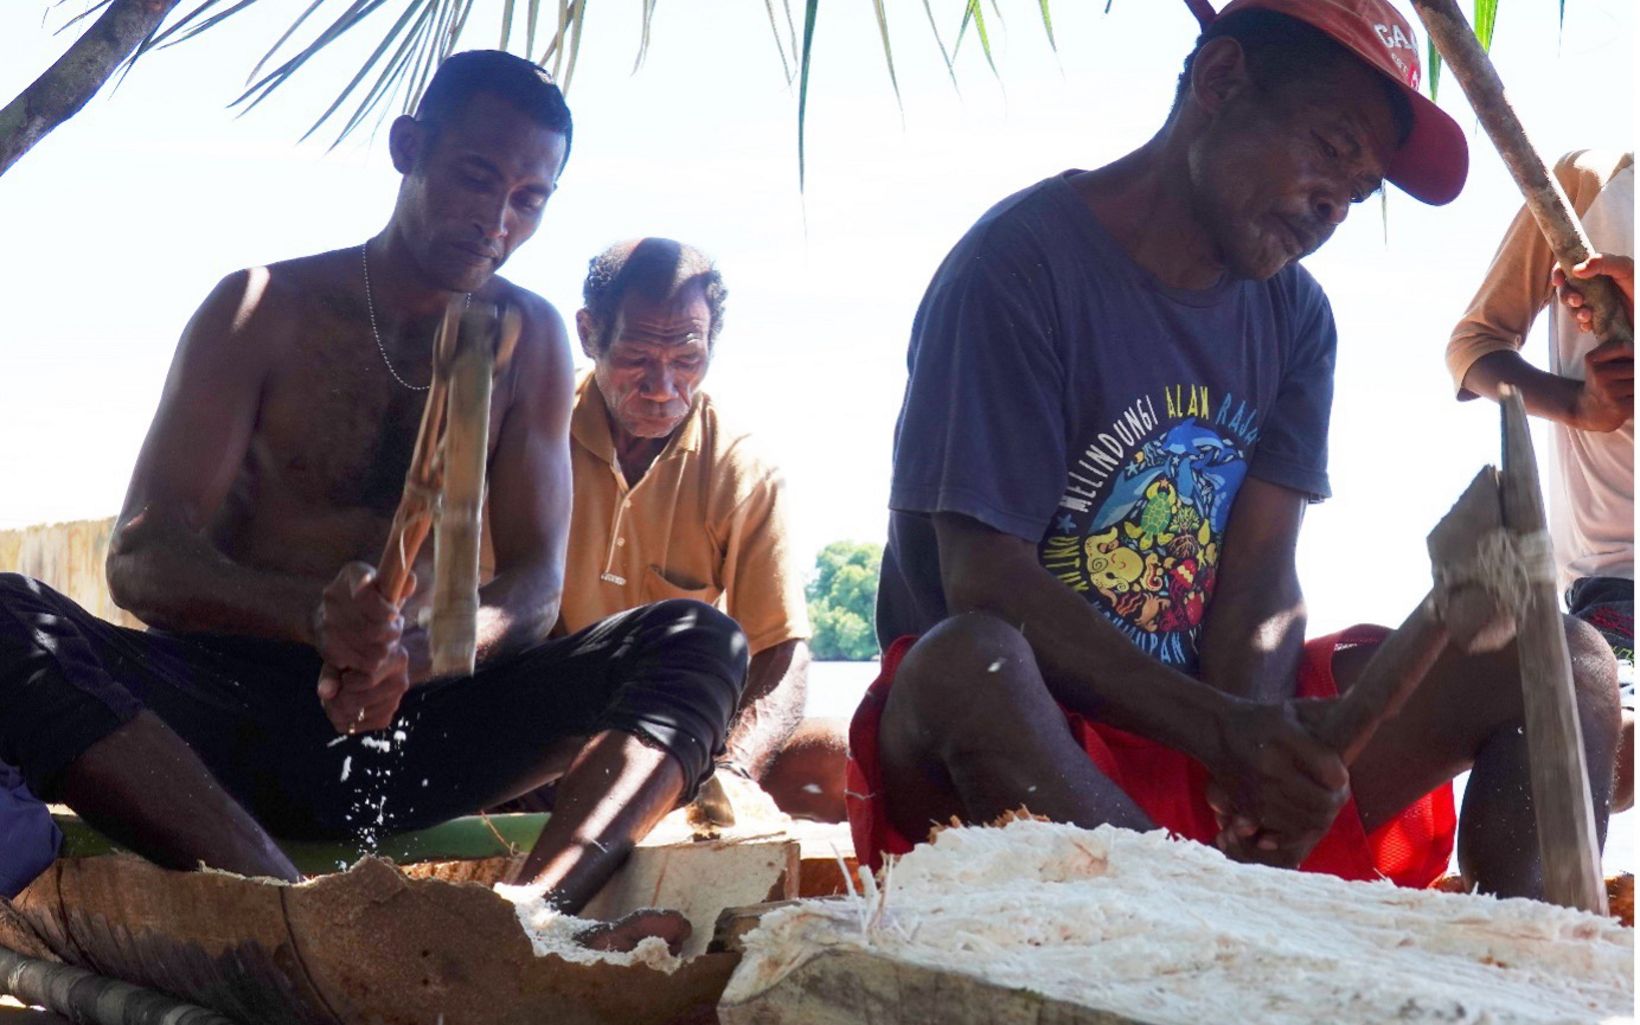 Keterangan Foto Perwakilan dari kelima kampung di Distrik Misool Utara menokok sagu bersama sebagai bagian dari Festival Budaya Misool Utara yang memperkenalkan budaya dan hidup keseharian warga Matbat. © Nugroho Arif Prabowo/YKAN